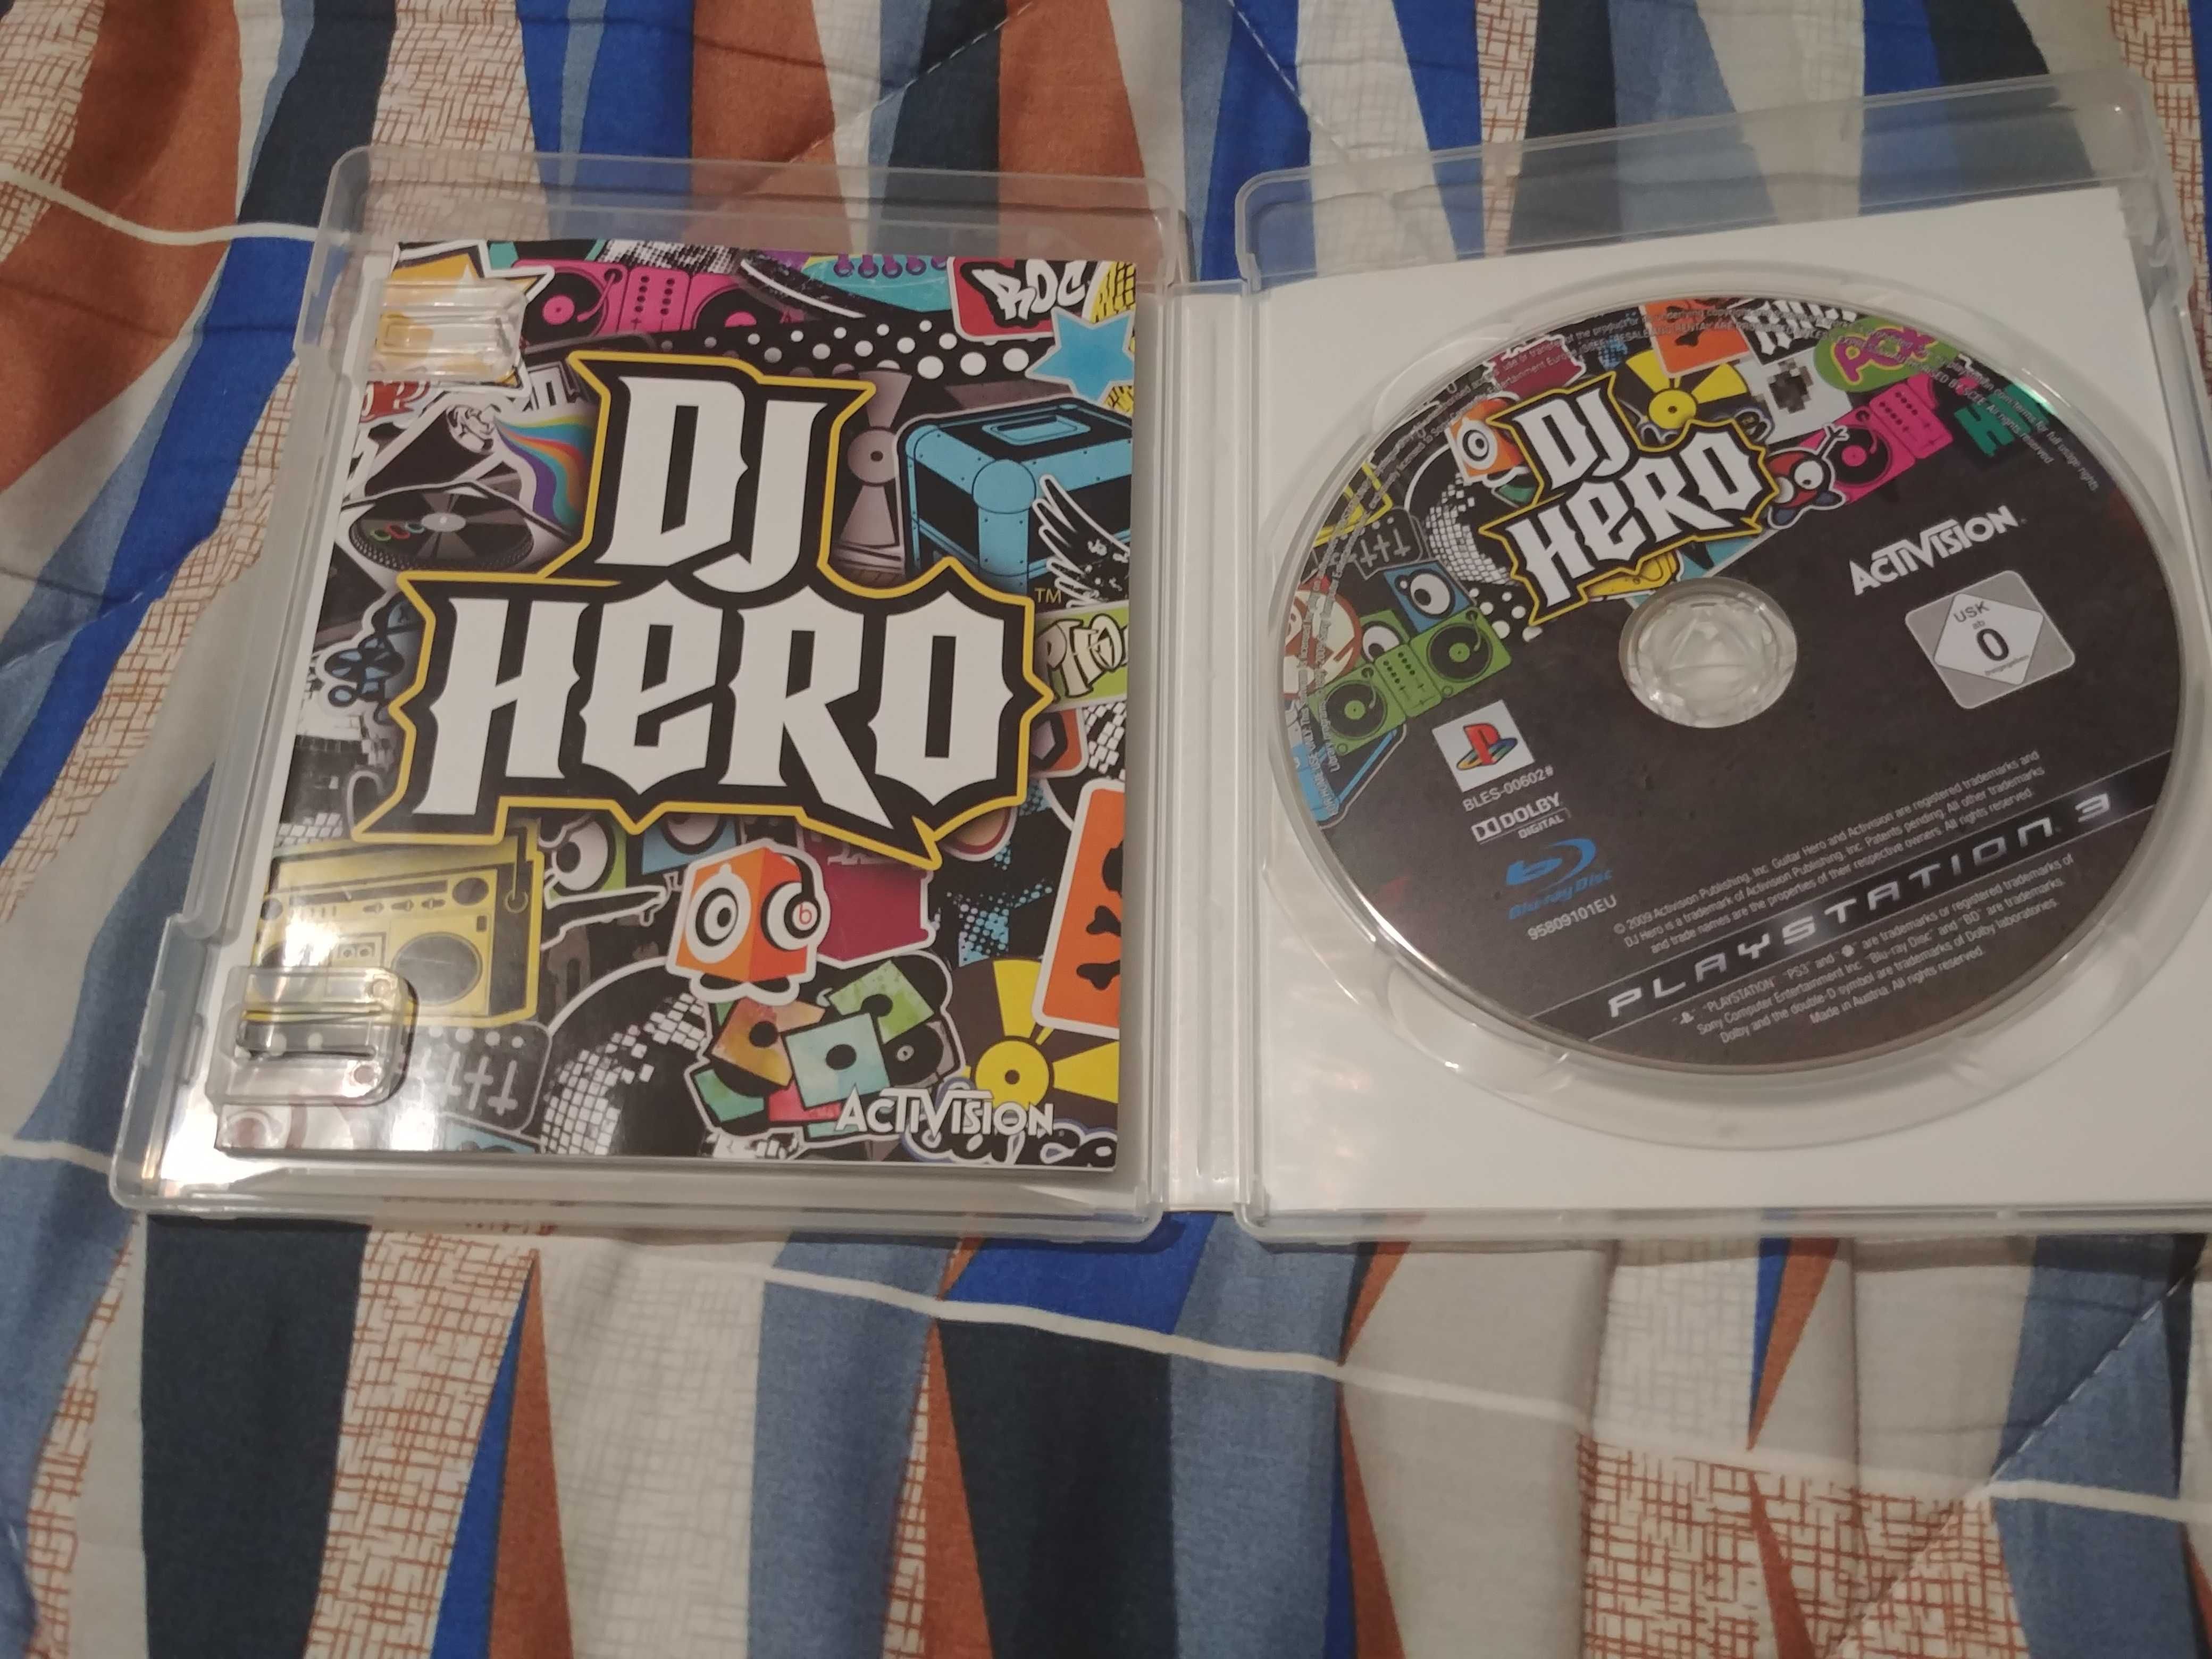 DJ Hero Playstation 3